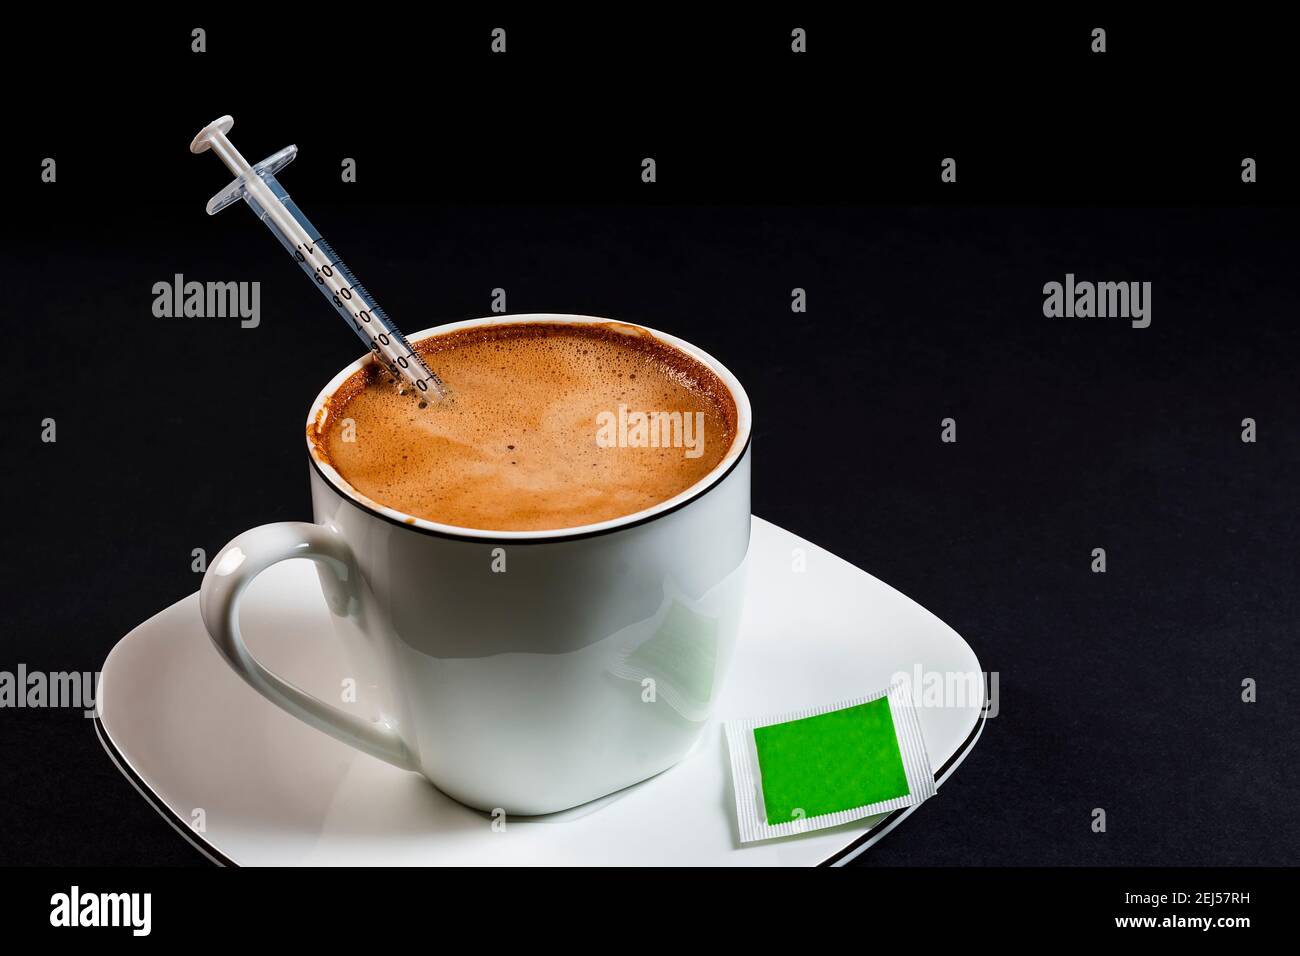 Kaffee mit Milch in Porzellanbecher mit Spritze in der Kaffee.Dies ist ein horizontales Format Foto gegen eine schwarze gemacht Hintergrund unter künstlichen l Stockfoto